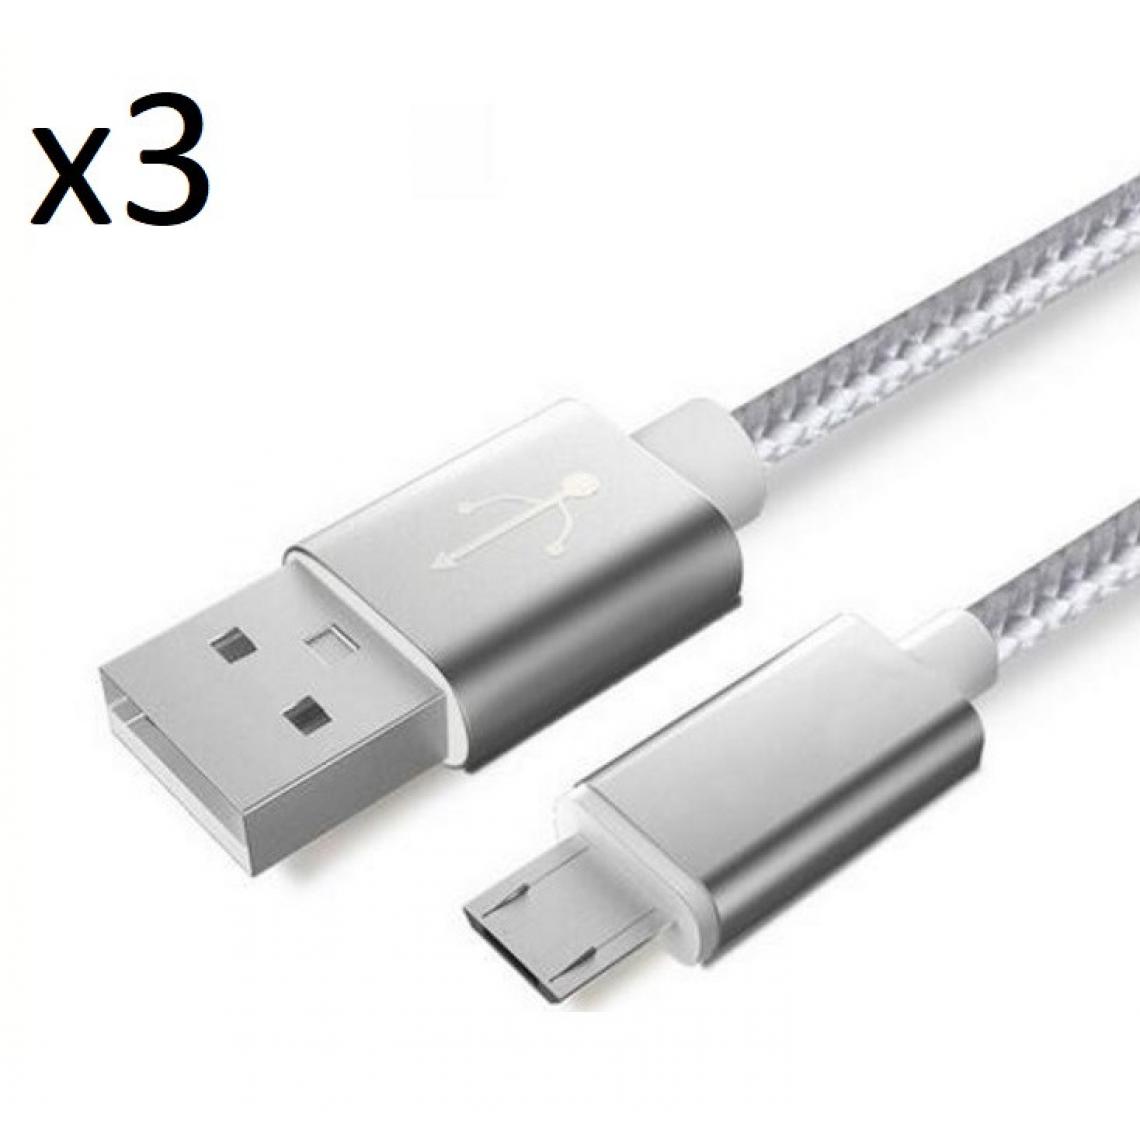 Shot - Pack de 3 Cables Metal Nylon Micro USB pour Ultimate Ears MEGABOOM 3 Smartphone Android Chargeur (ARGENT) - Chargeur secteur téléphone